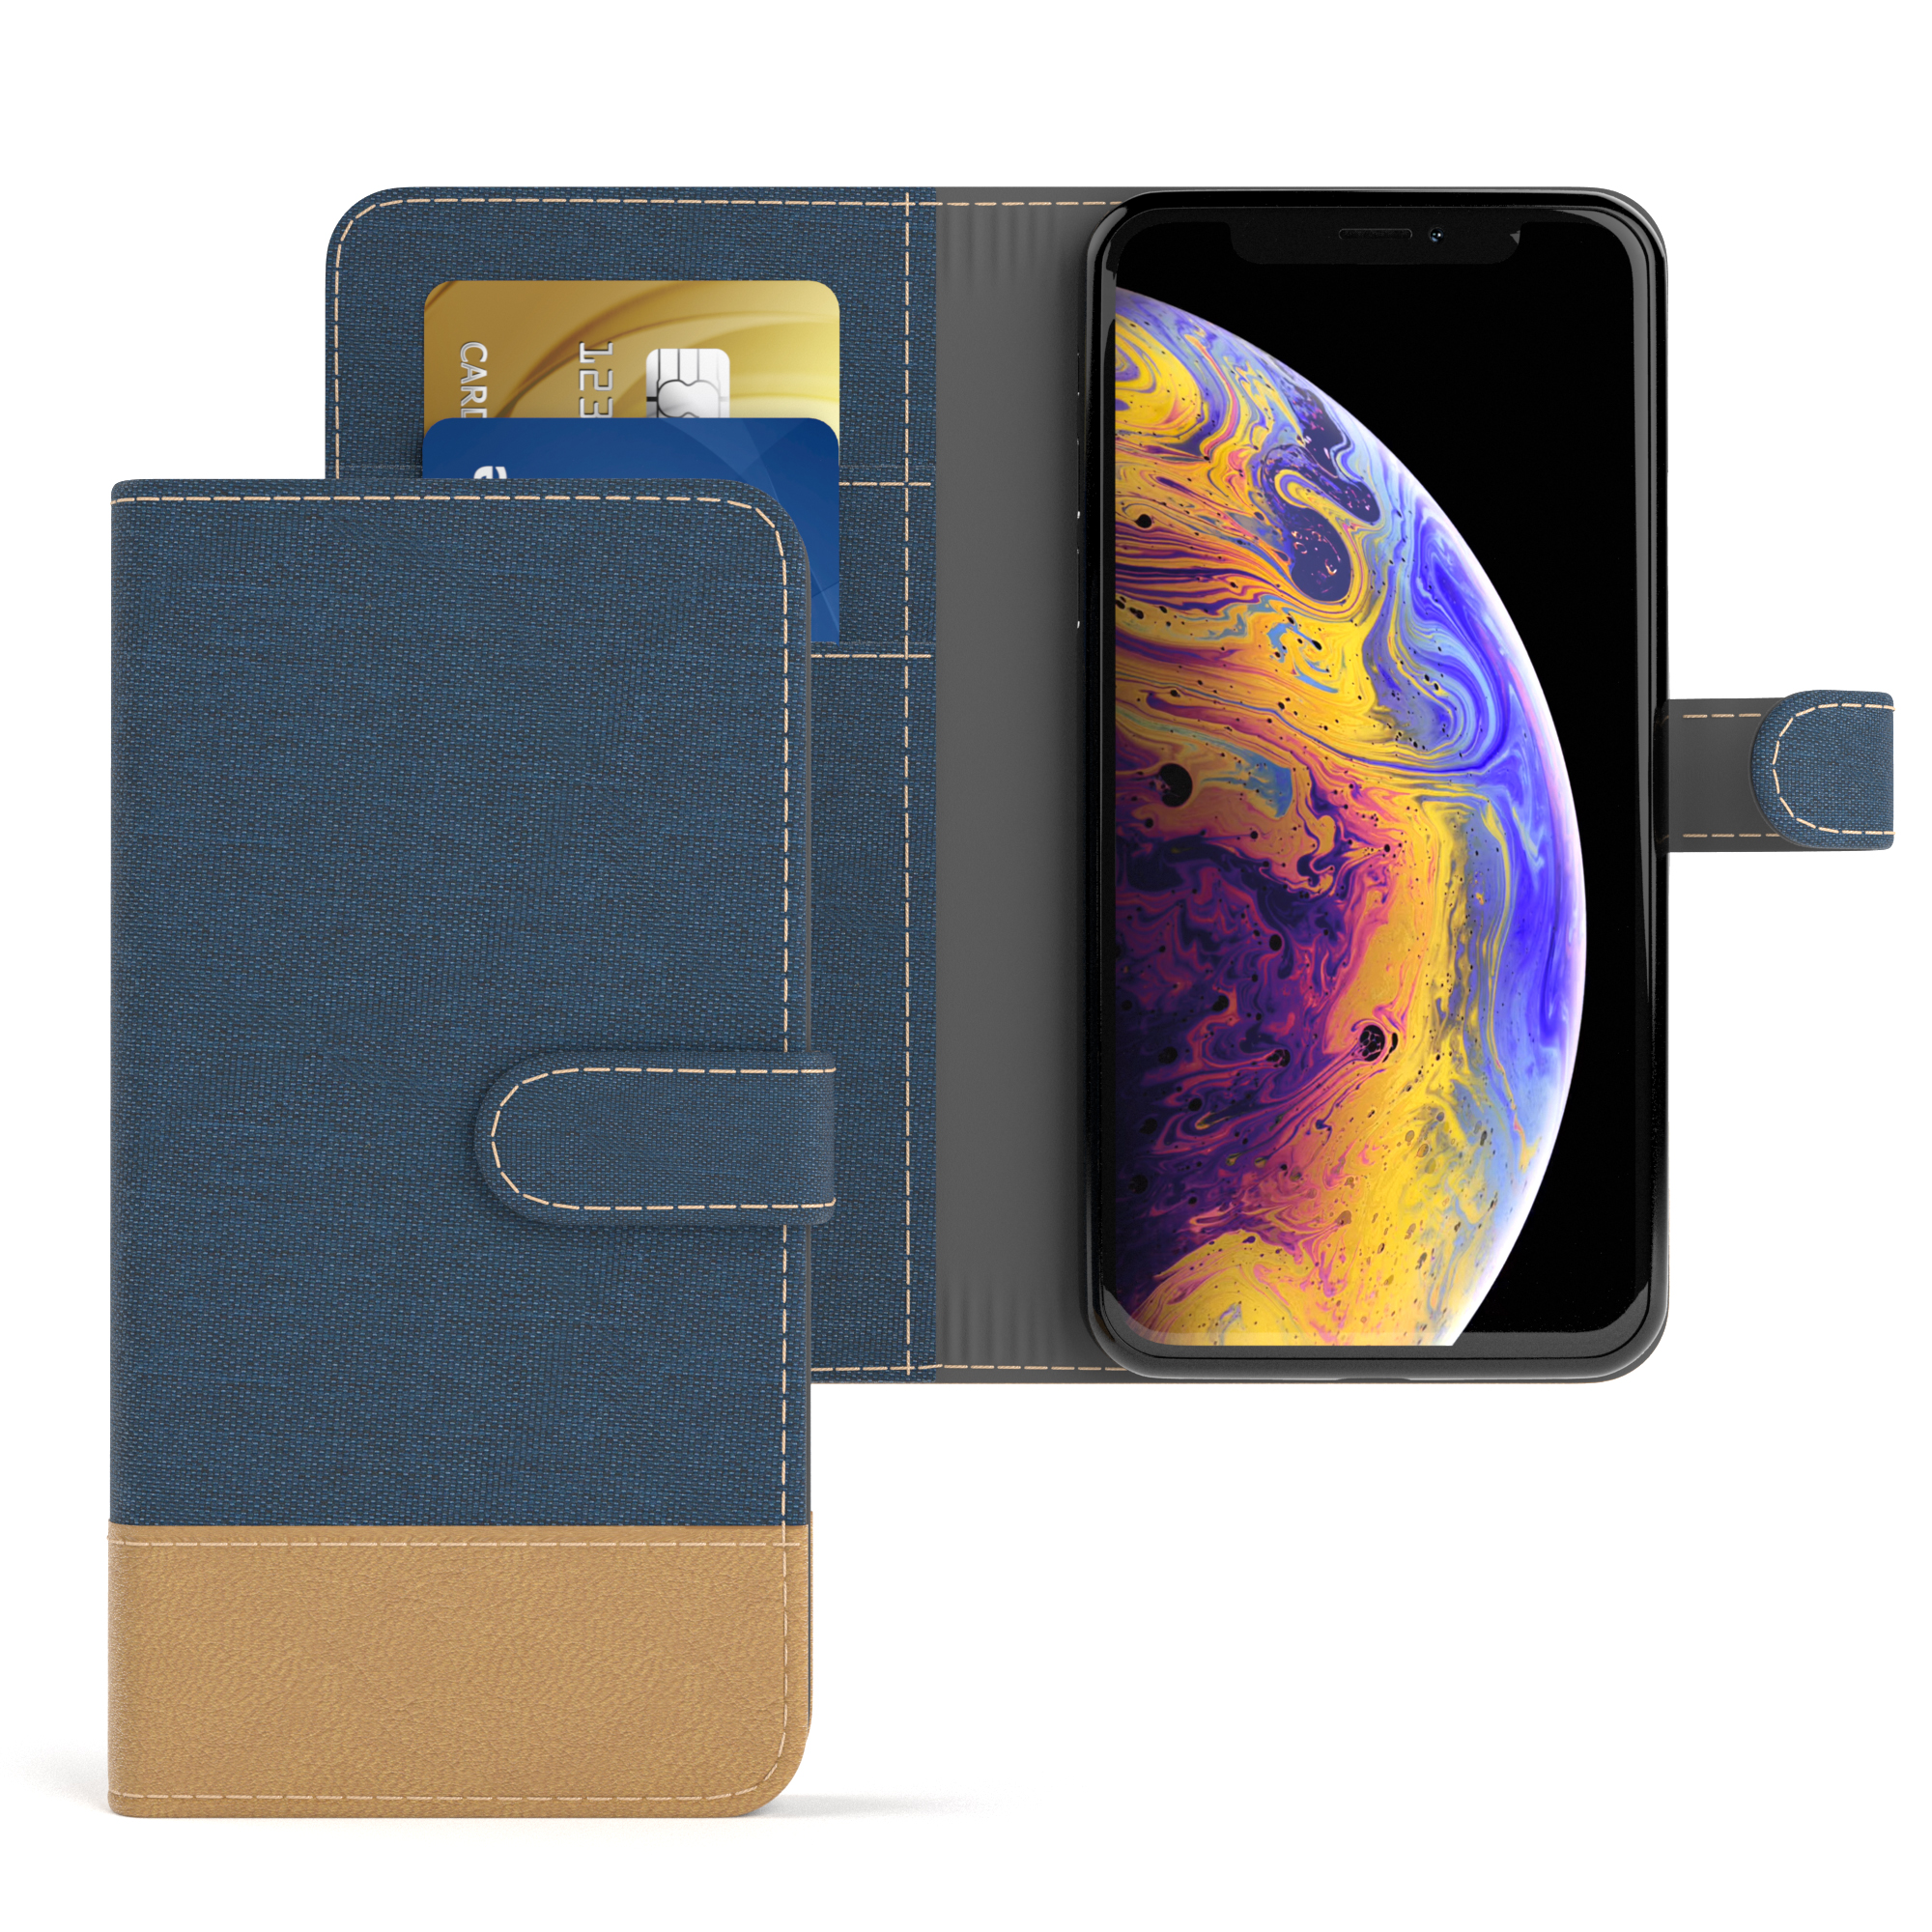 CASE Klapphülle mit X Kartenfach, iPhone Bookcover, Bookstyle EAZY XS, Blau Jeans Apple, /